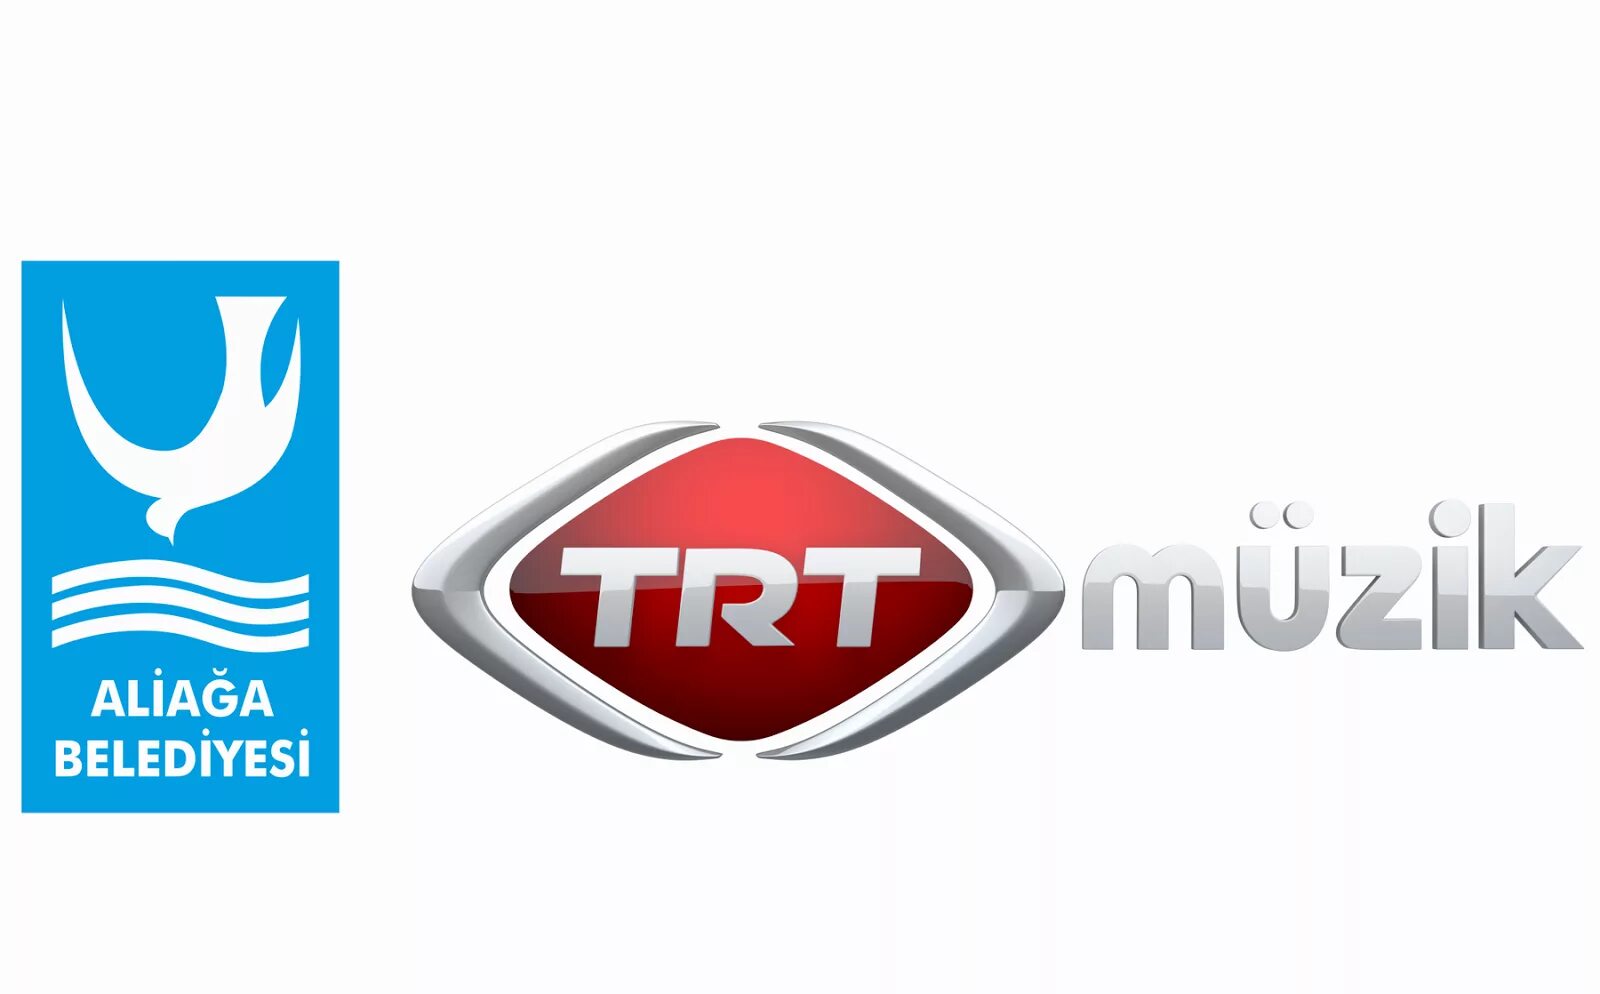 Trt canlı yayın. TRT Music. TRT muzik канал логотип. TRT Müzik HD Телеканал. TRT kujujnbg запчасти.